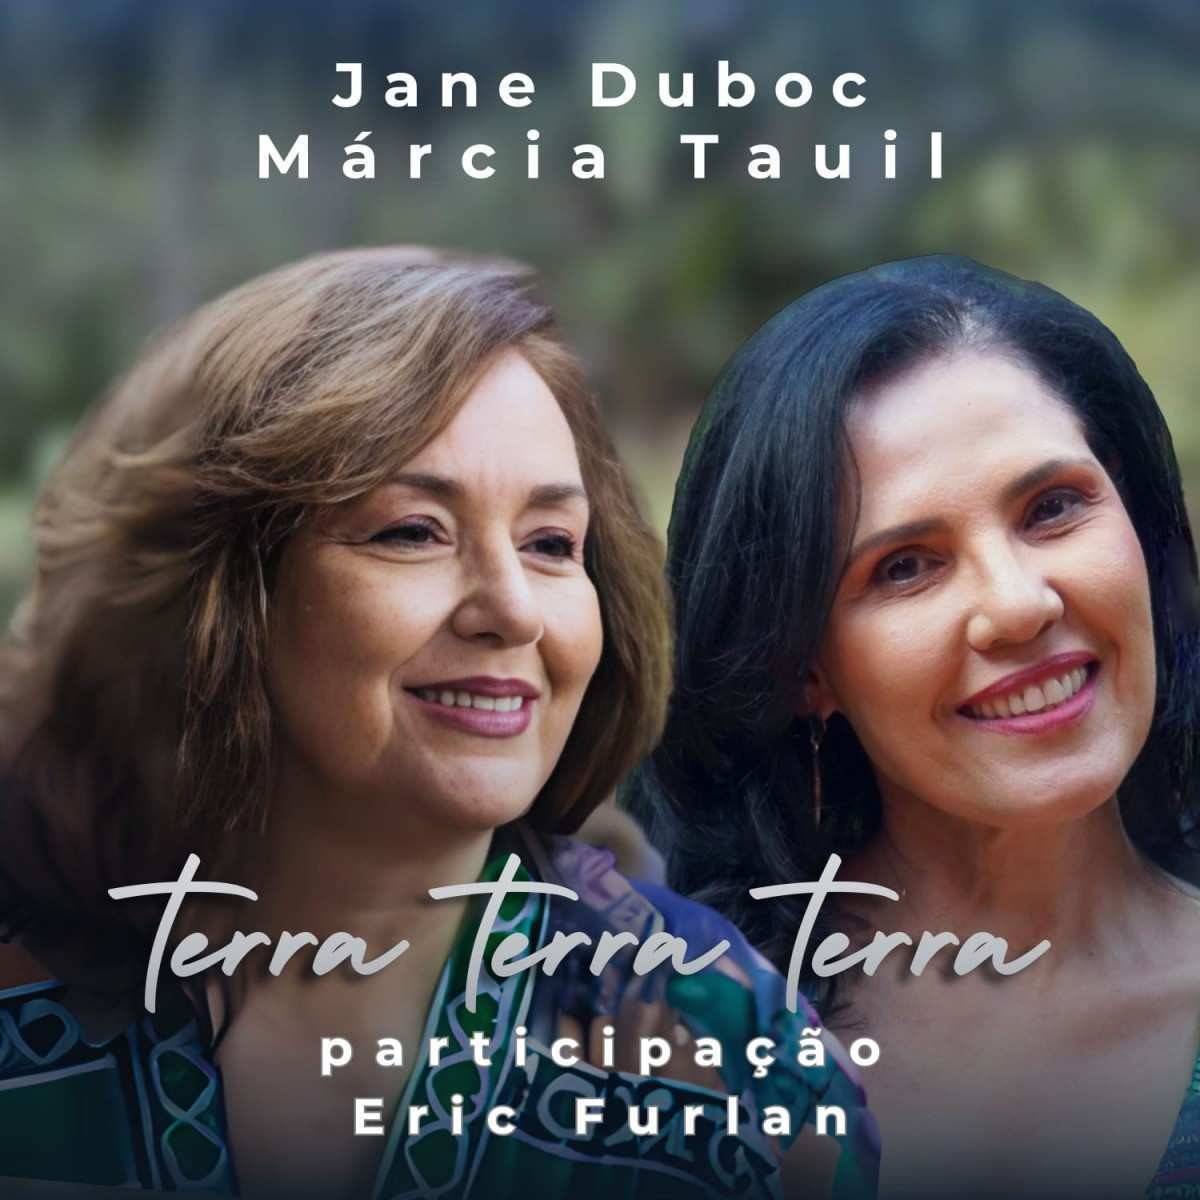 Márcia Tauil lança música com Jane Duboc sobre preservação ambiental